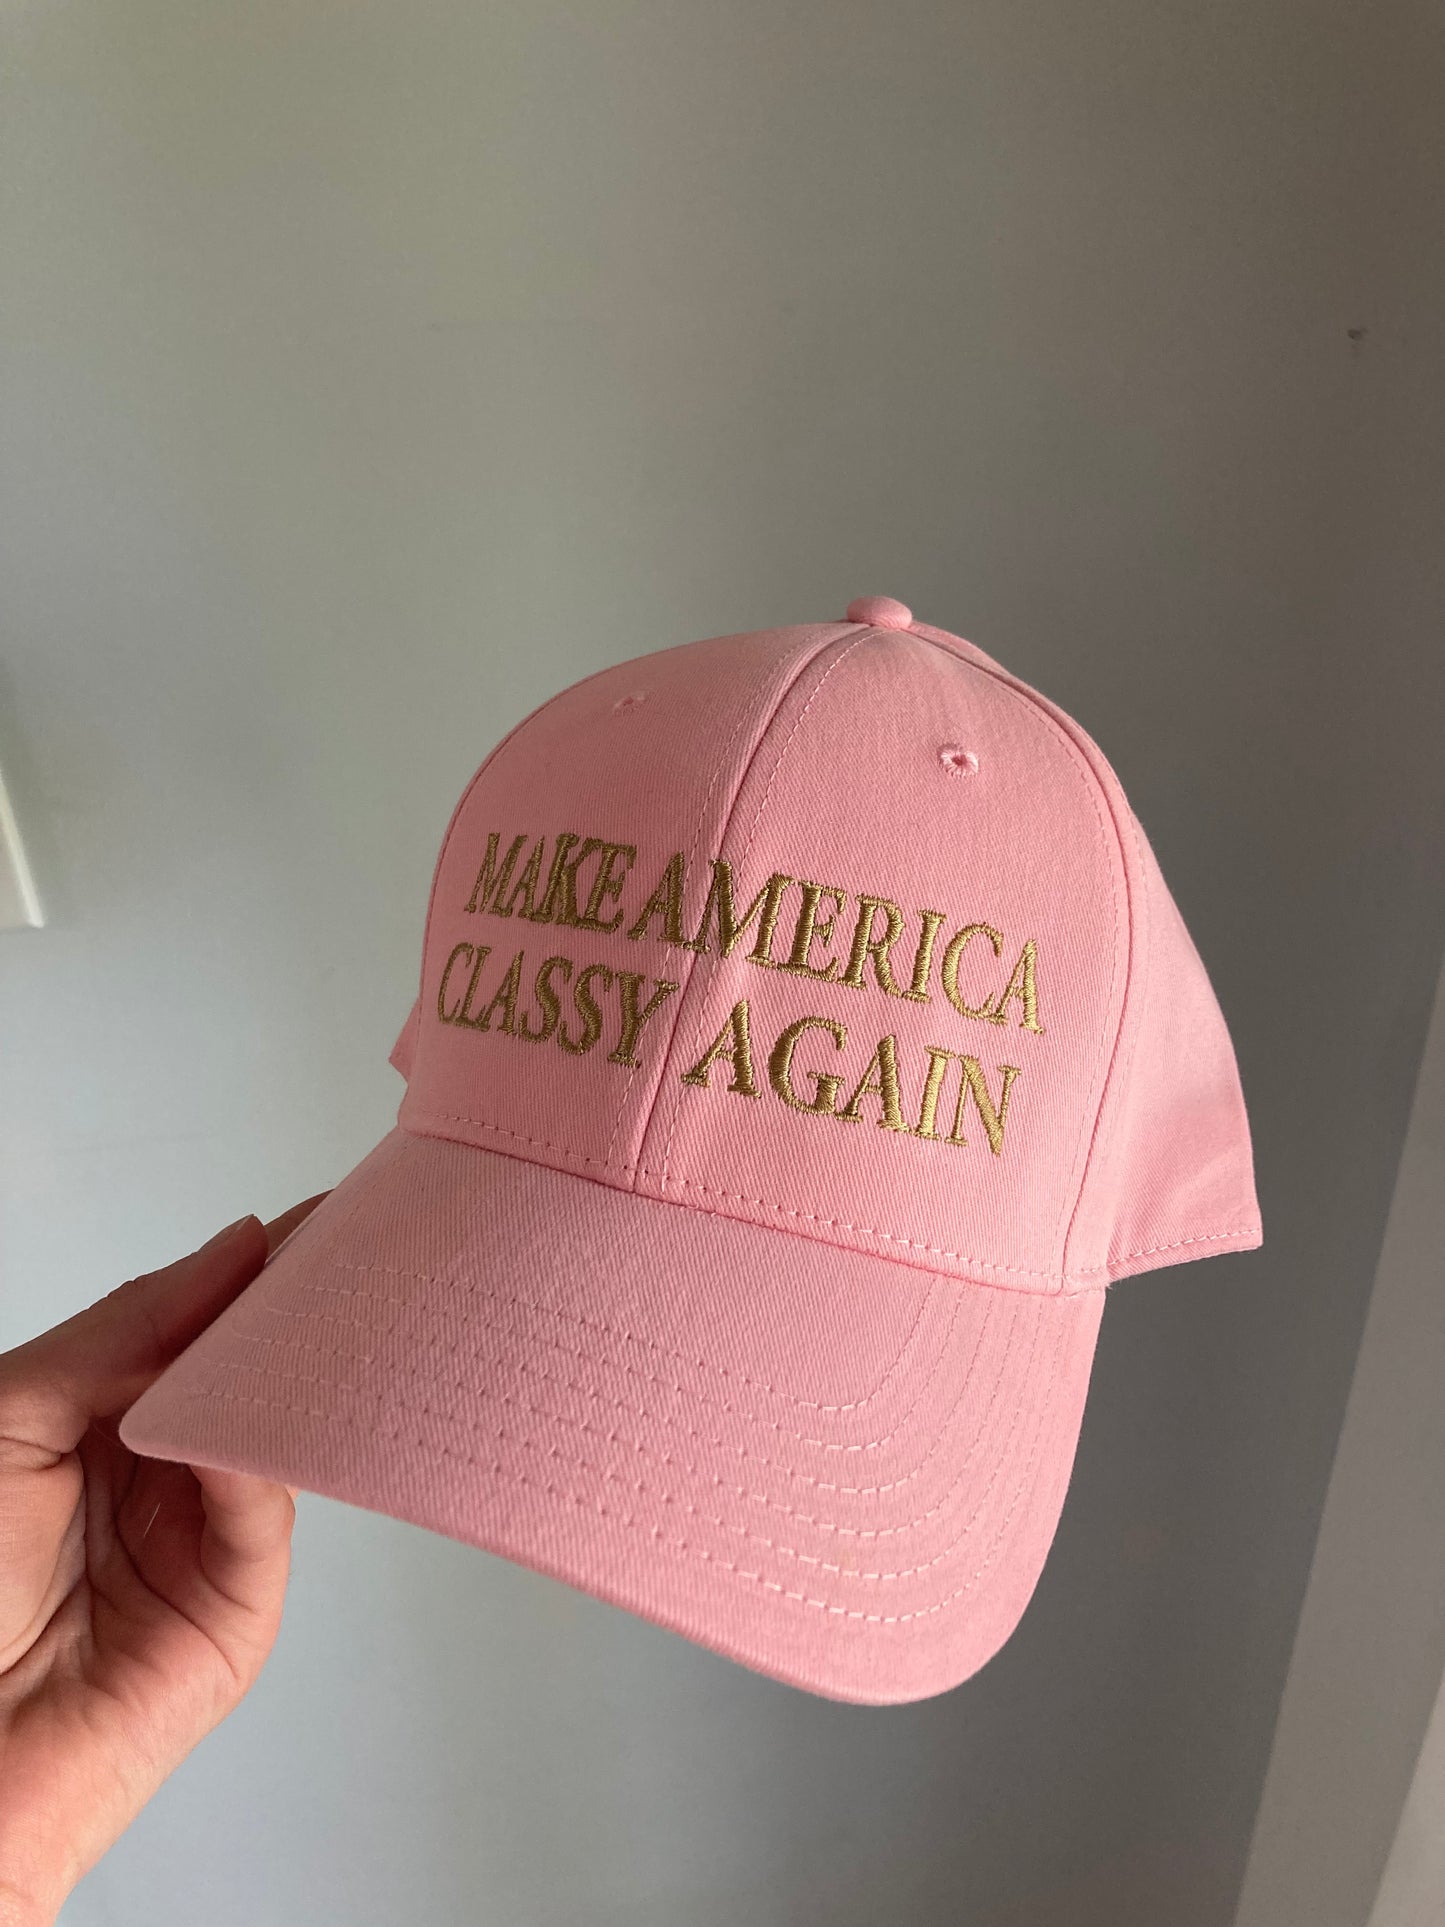 Make America Classy Again Hat